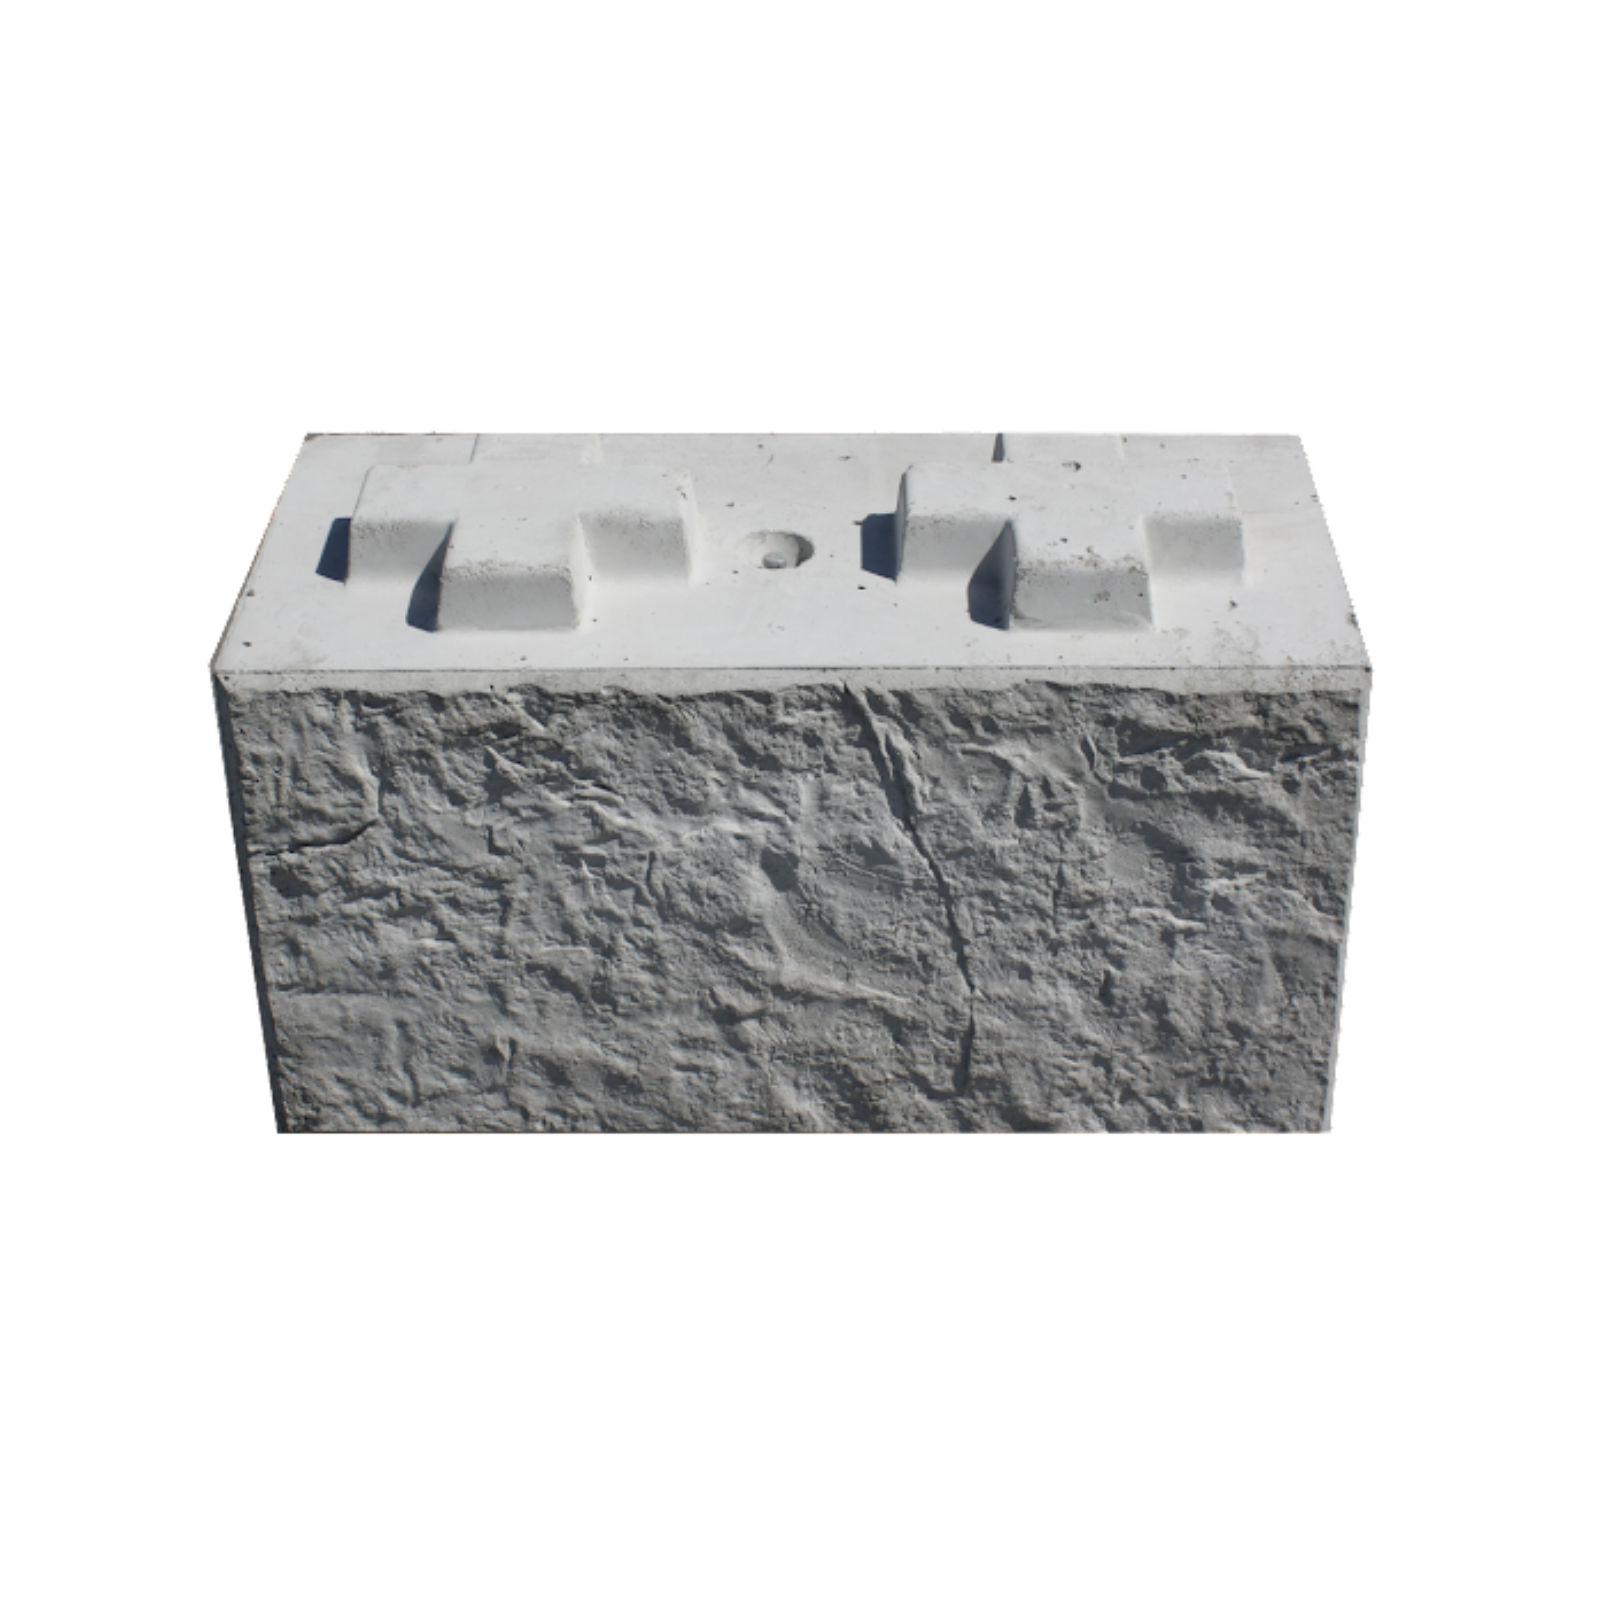 Front view of a 800 Standard Stonebloc concrete block